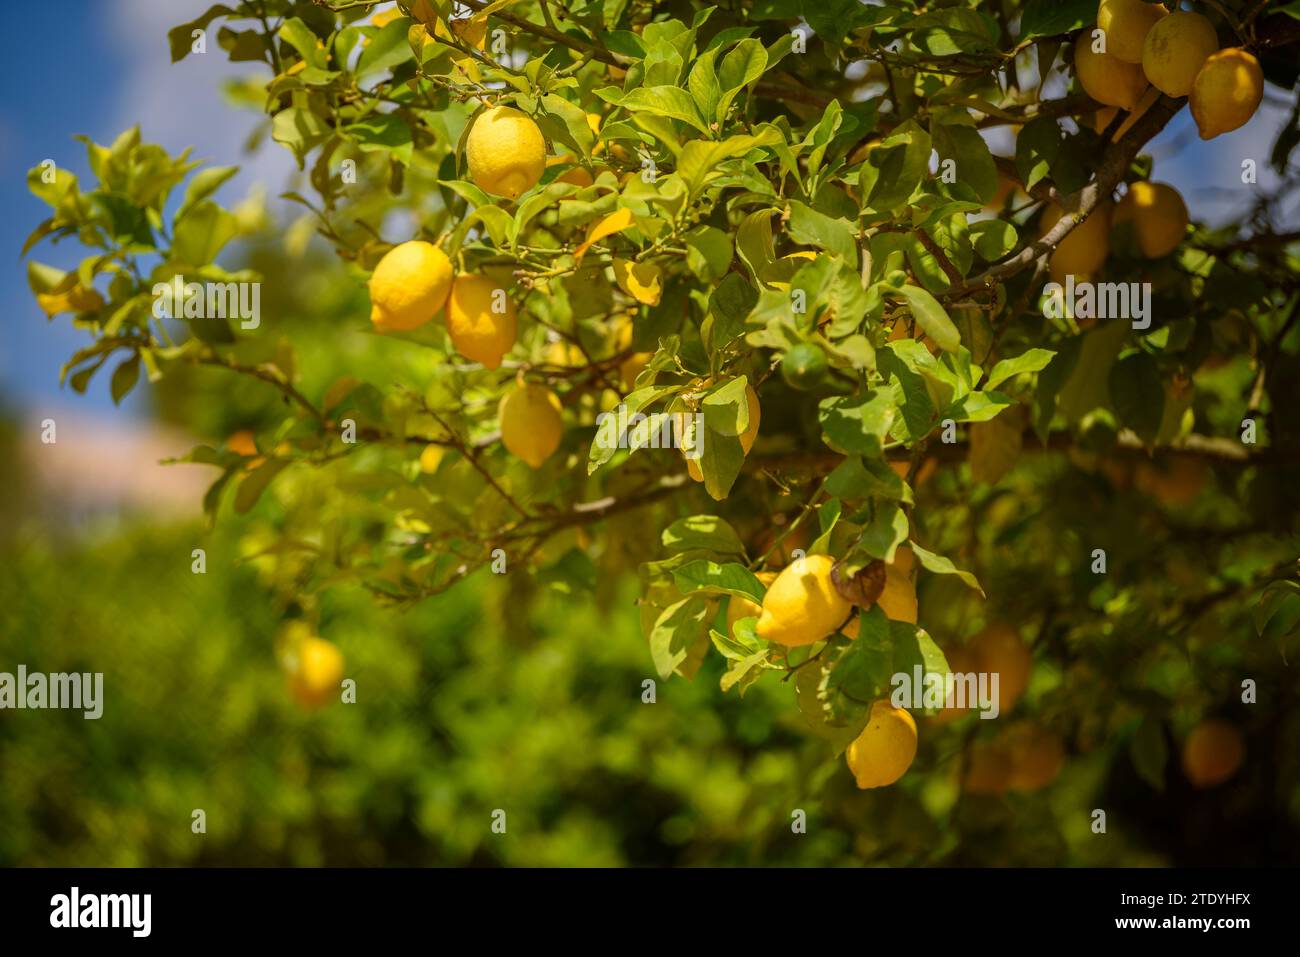 Limoni su un limone in un campo vicino al villaggio di Maria la Salut (Maiorca, Isole Baleari, Spagna) ESP: Limones en un limonero de un campo Foto Stock